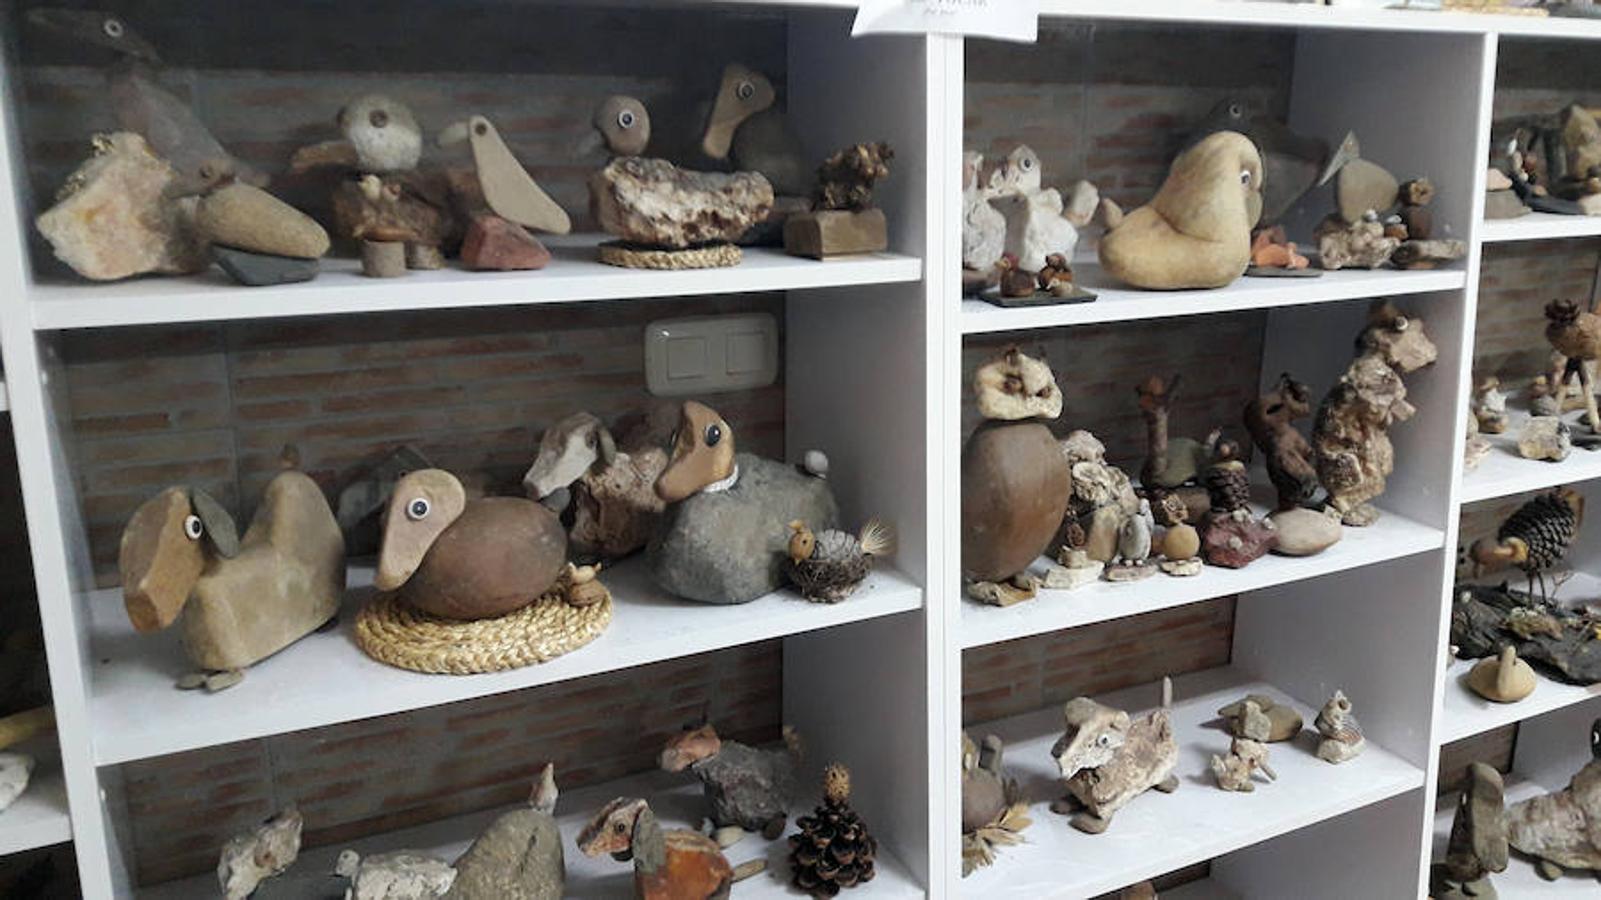 Juan Sánchez Huertas tiene abierto al público desde el 2000, en Campanario, su Museo Arte-Naturaleza y Etnográfico. Su colección consta de numerosos aperos de labranza y pastoriles, pero también de utensilios de los distintos oficios de antaño